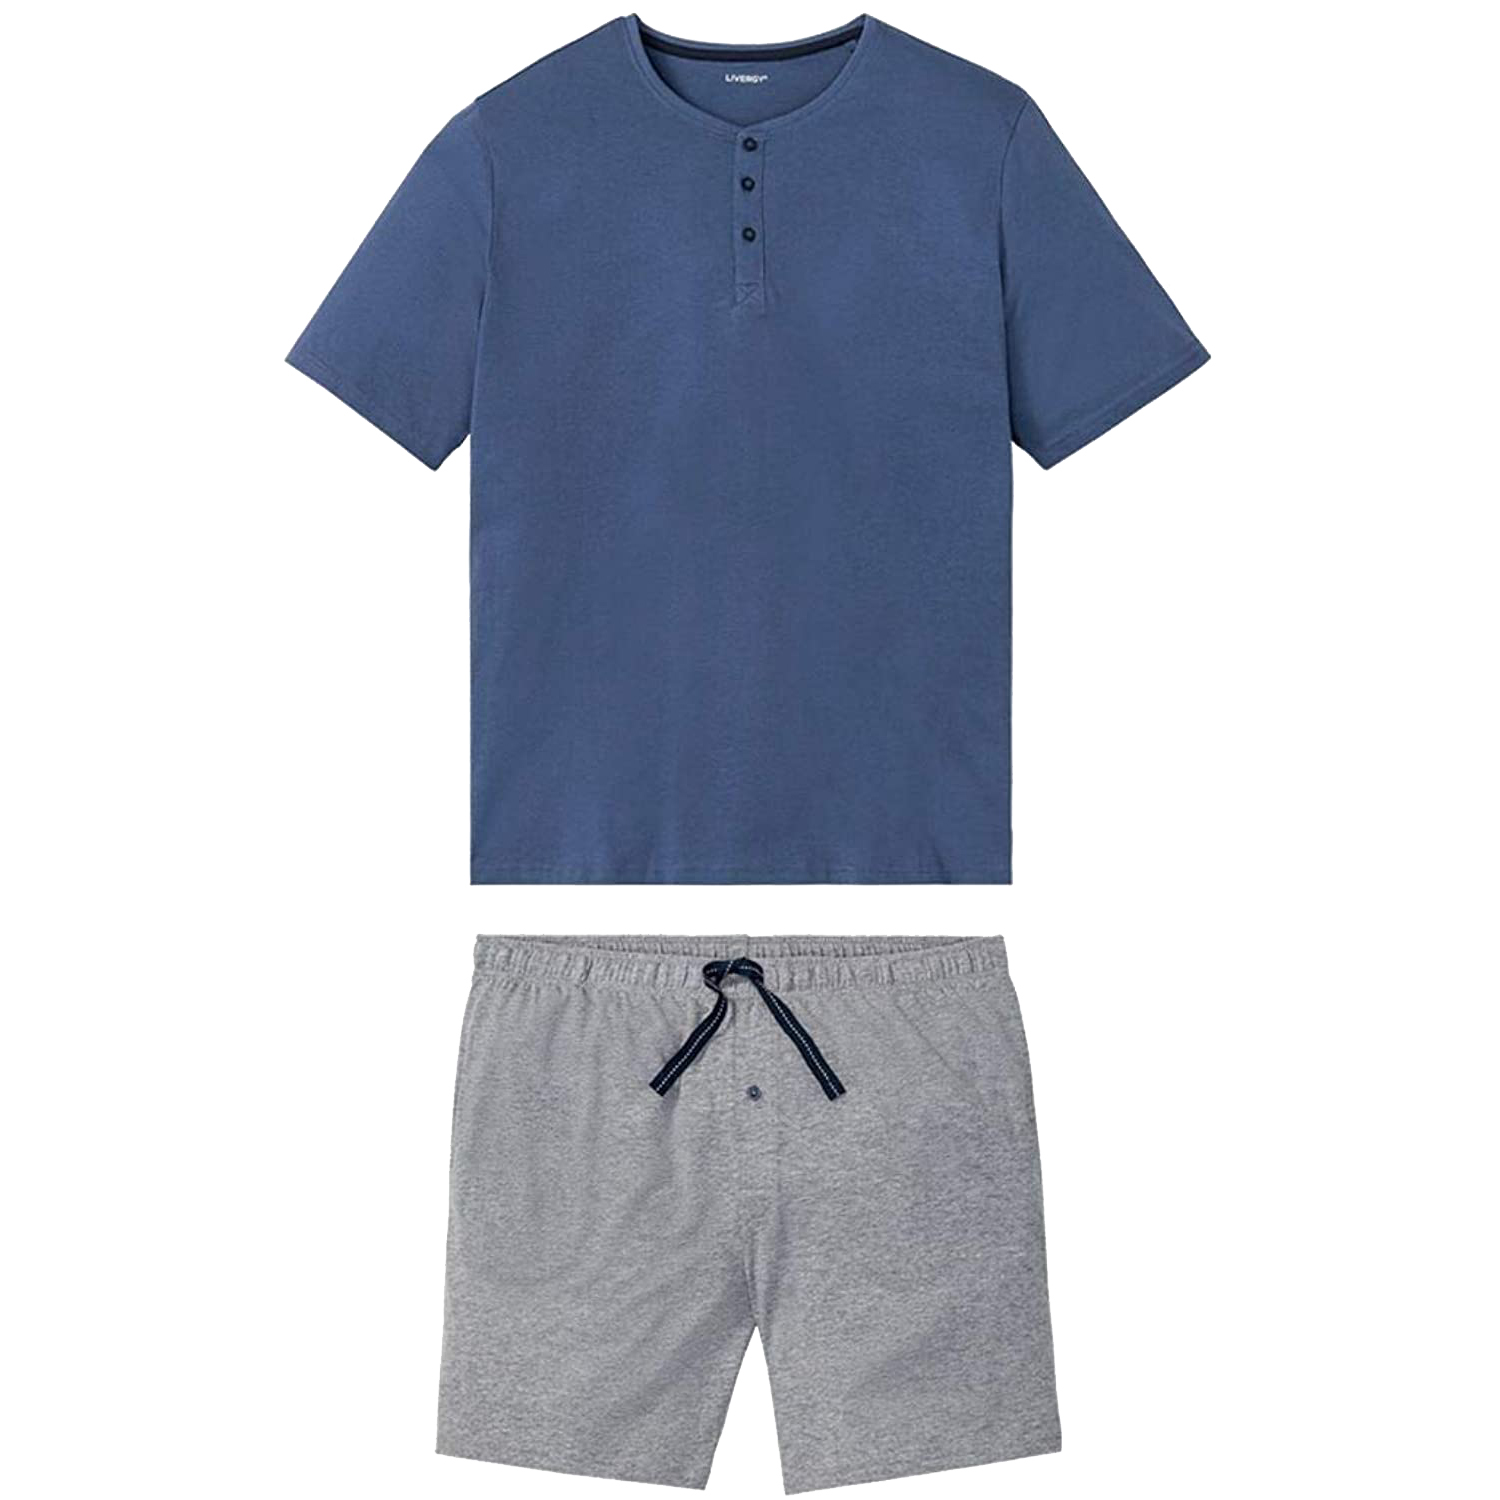 ست تی شرت و شلوارک مردانه لیورجی مدل LV02